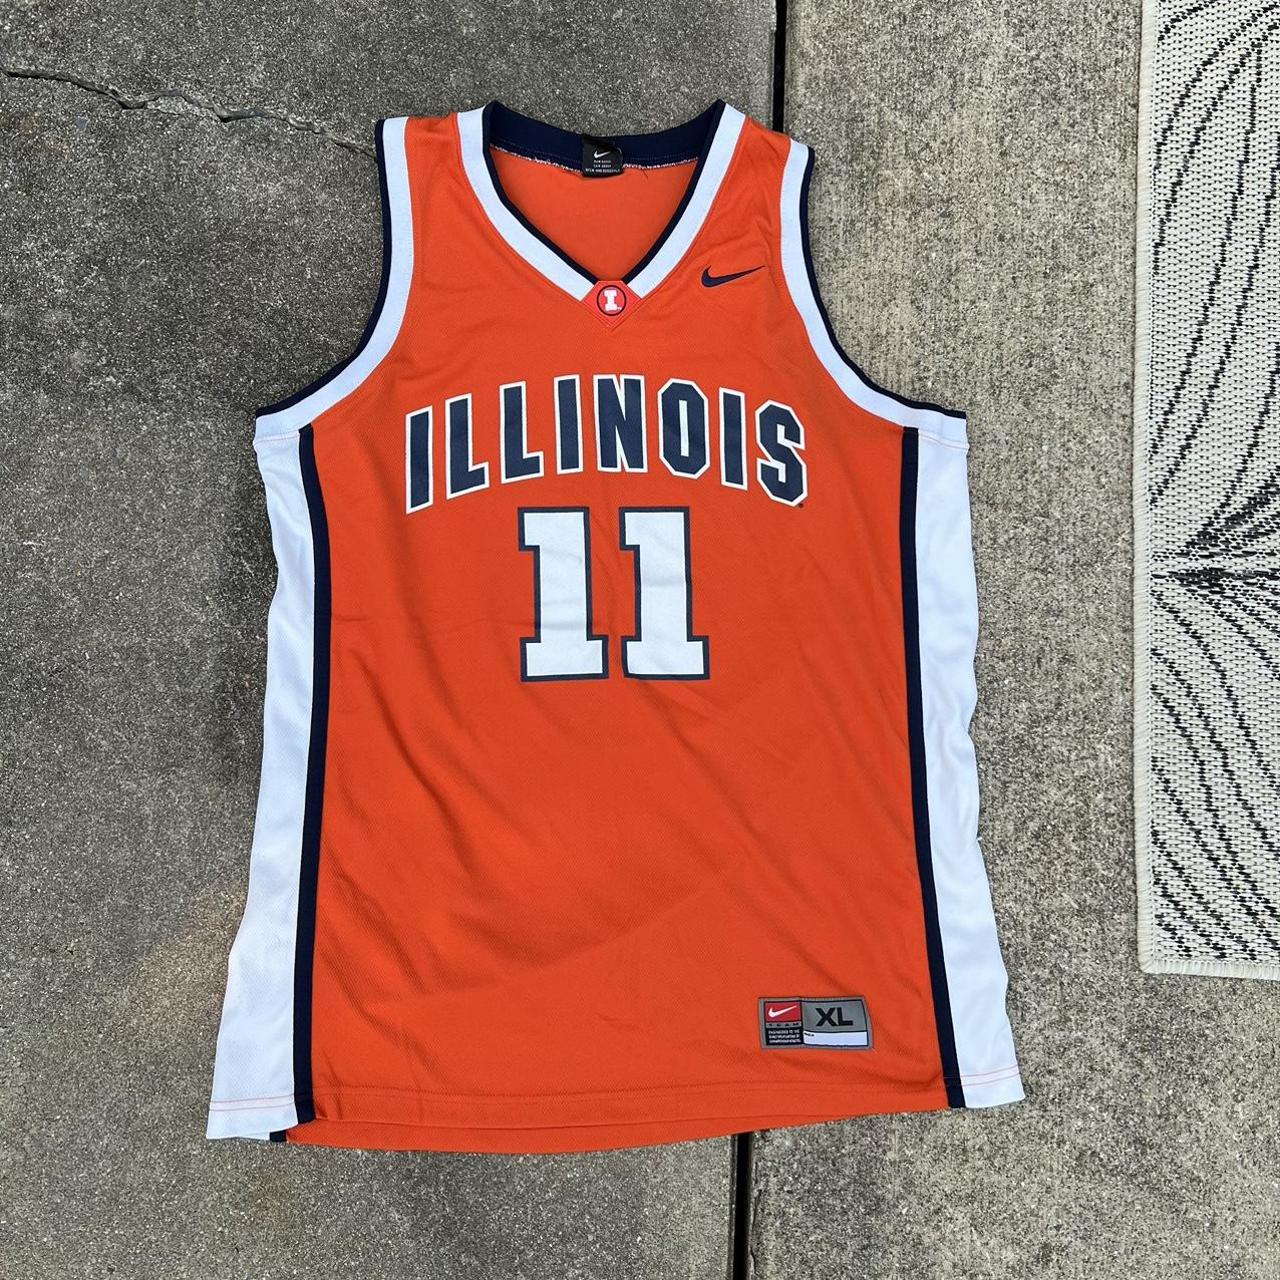 University of Illinois Fighting Illini Basketball Jersey #42 Team